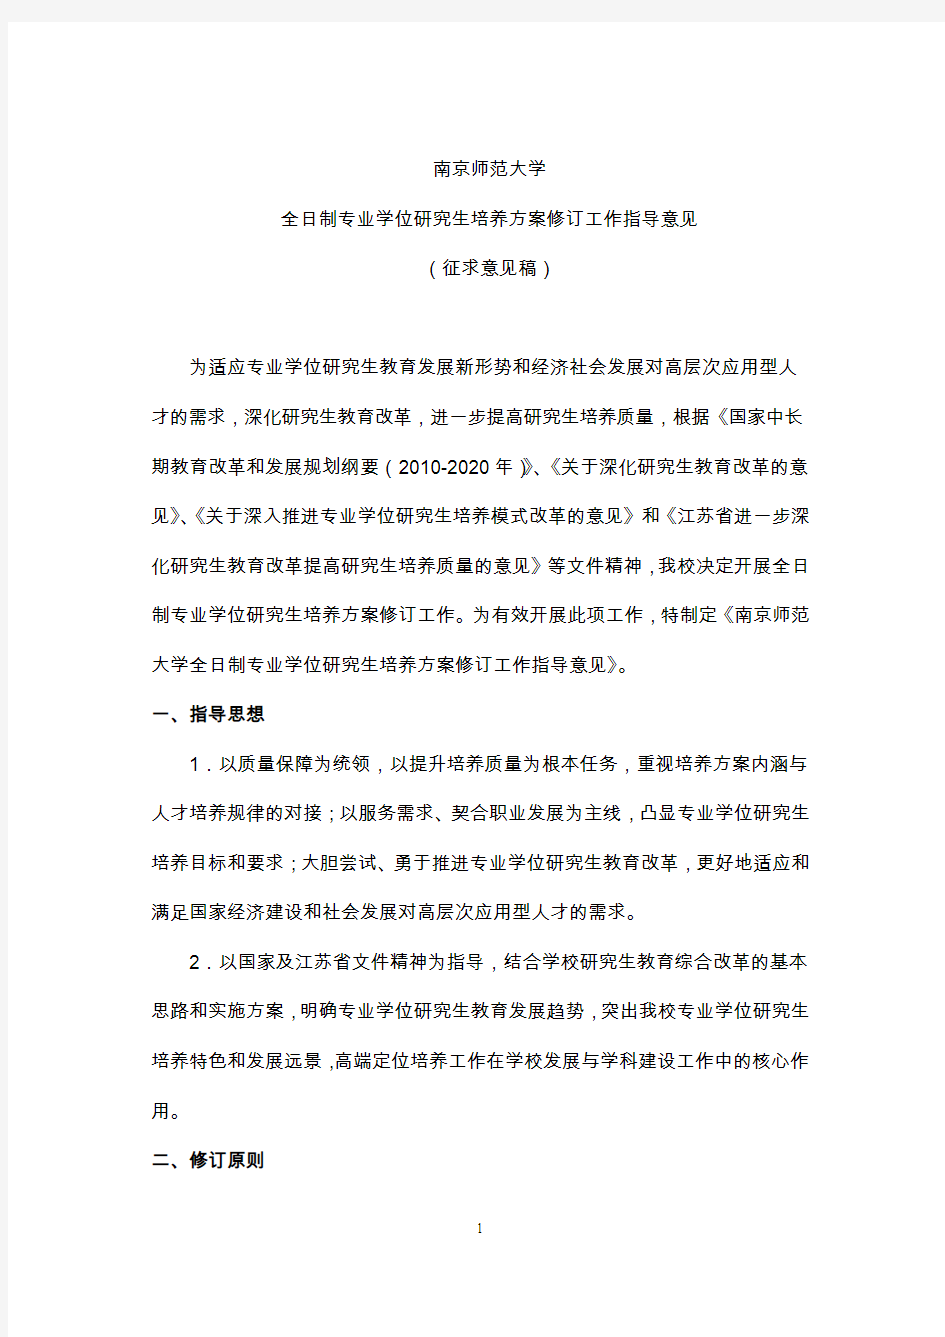 南京师范大学学术型研究生培养方案修订工作指导意见